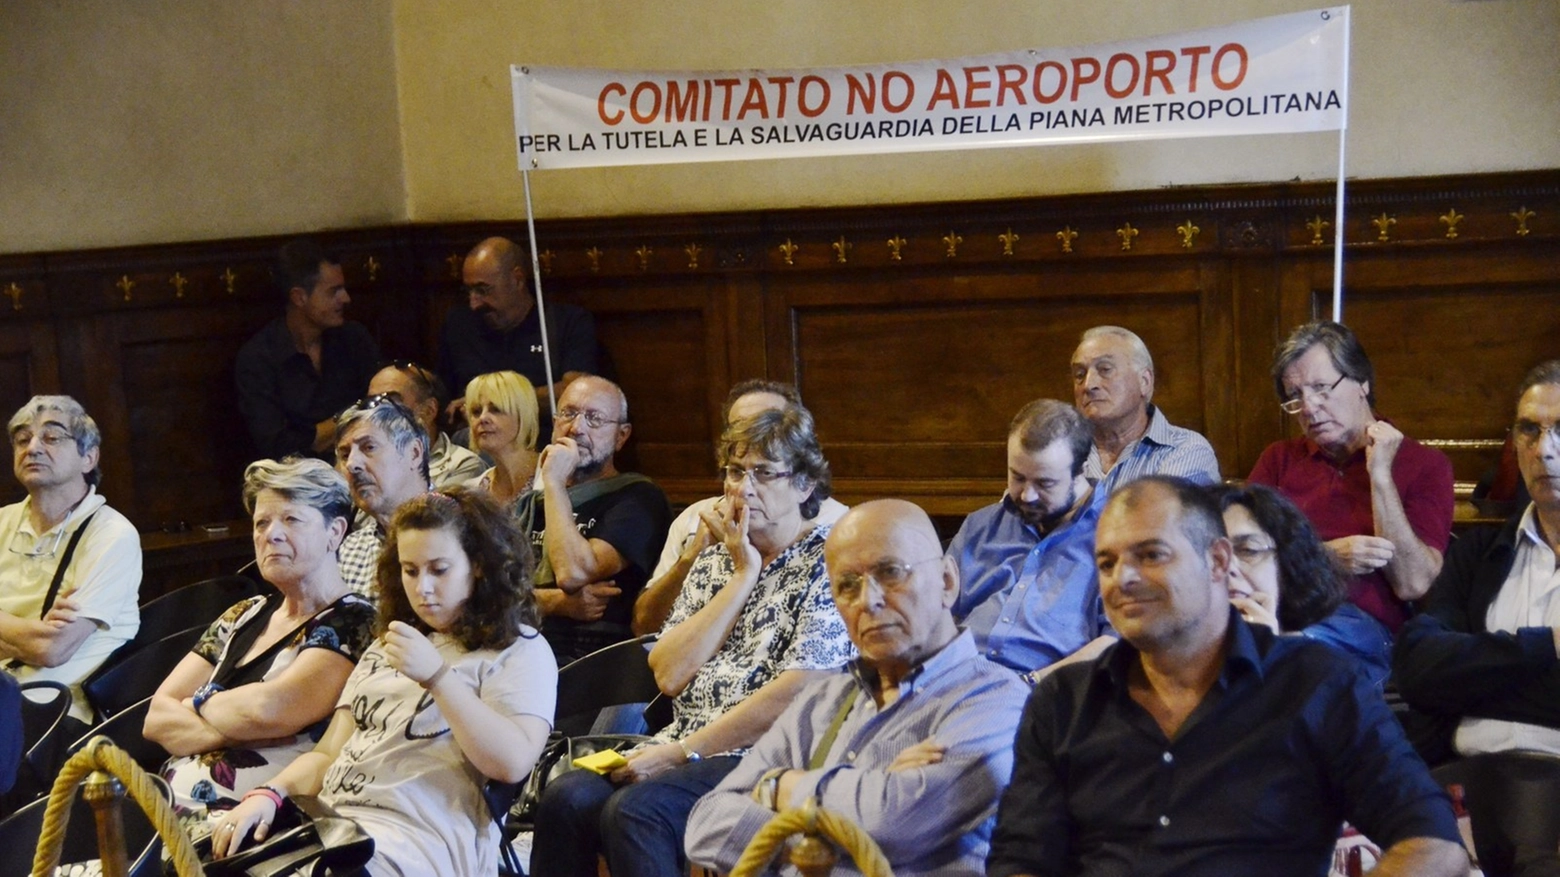 Il comitato "No aeroporto" in municipio (foto Attalmi)